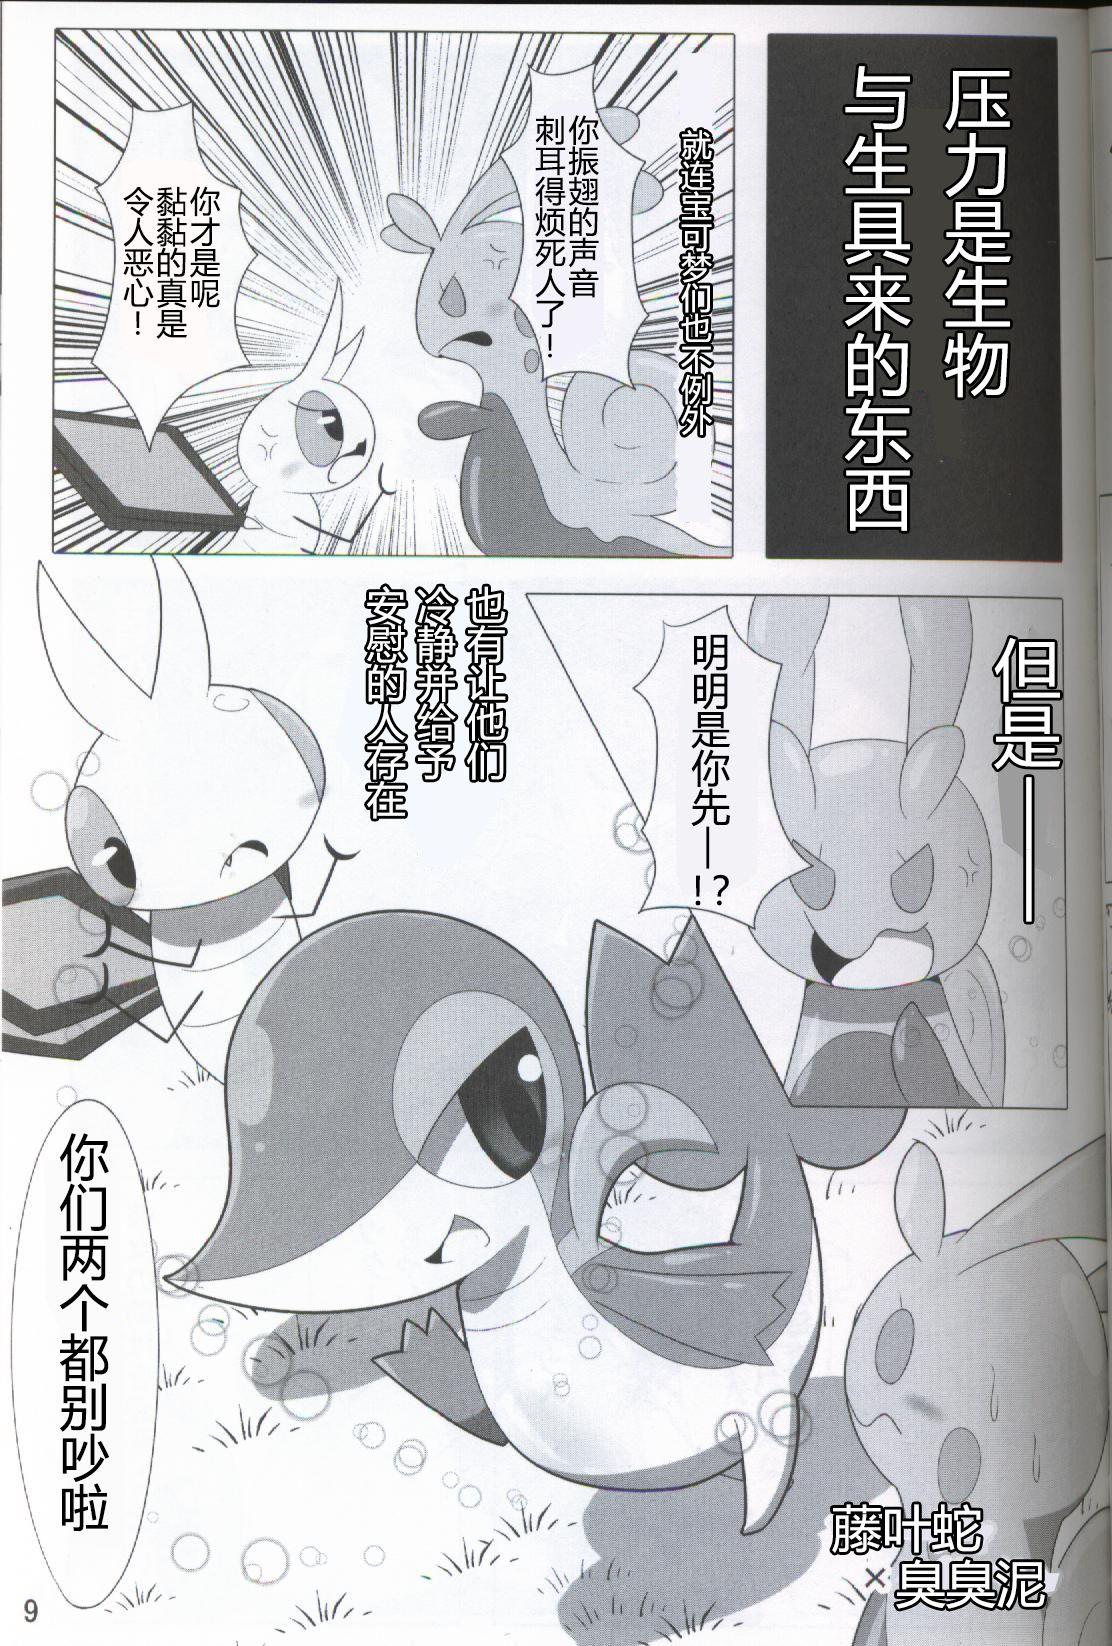 Fake Tits Pokéda | 宝可堕 - Pokemon Group - Page 10